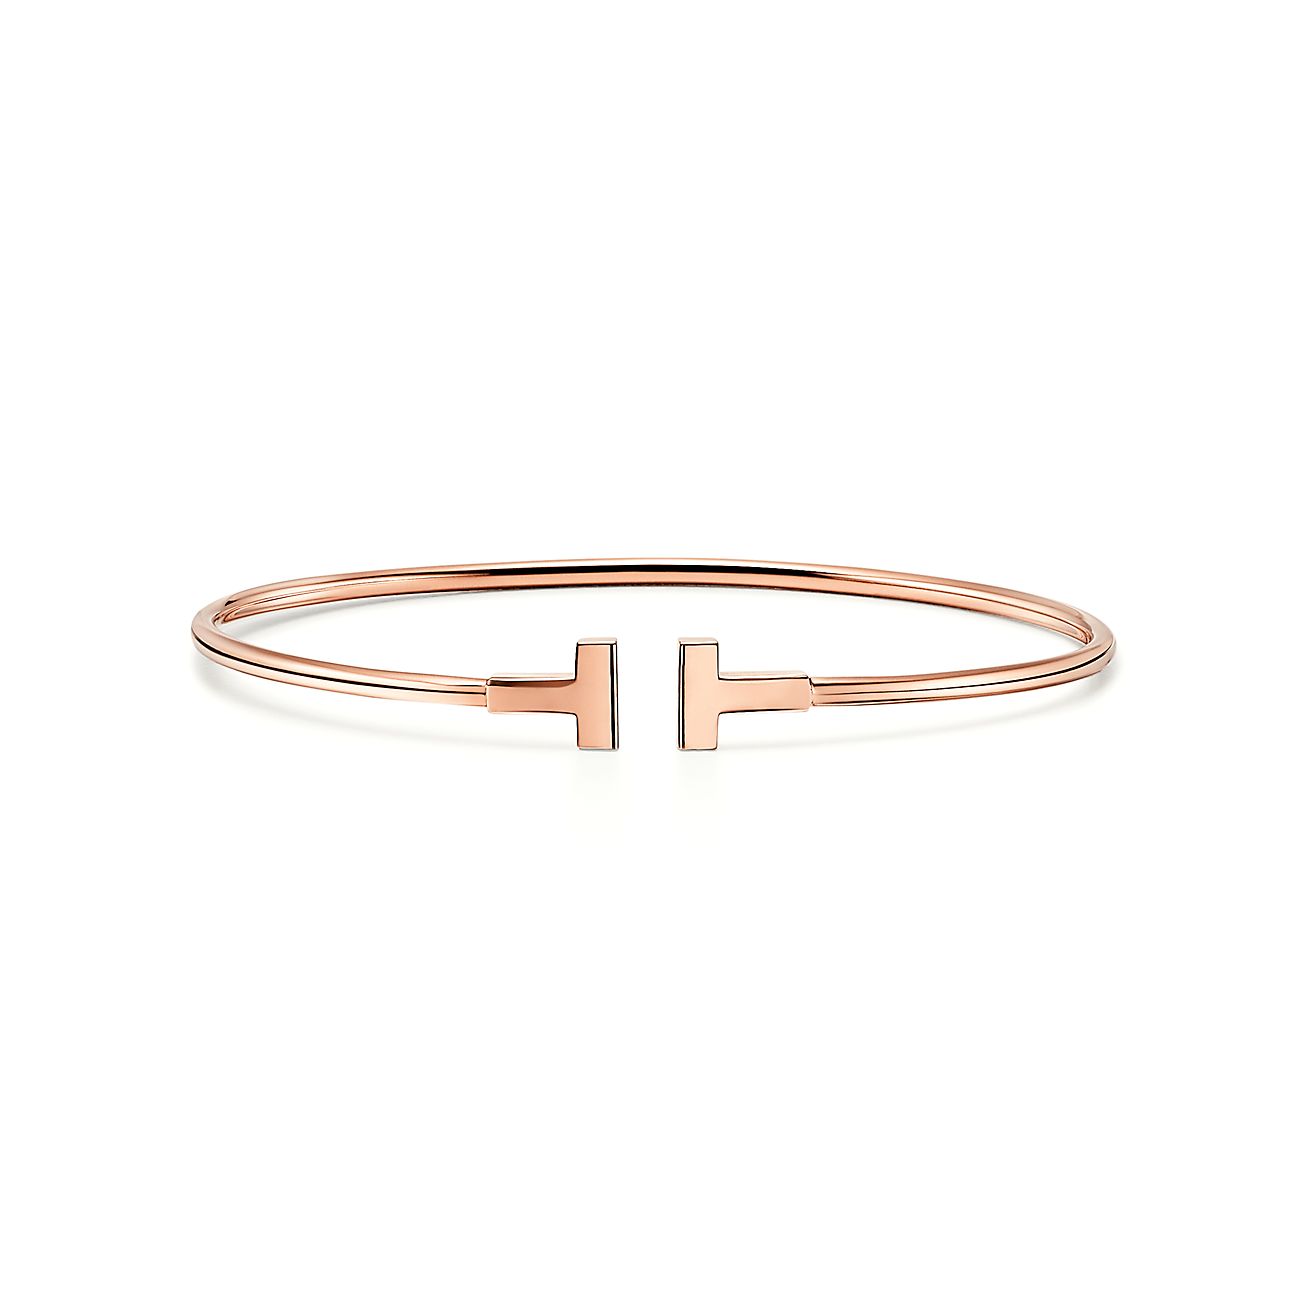 Tiffany T narrow wire bracelet in 18k 